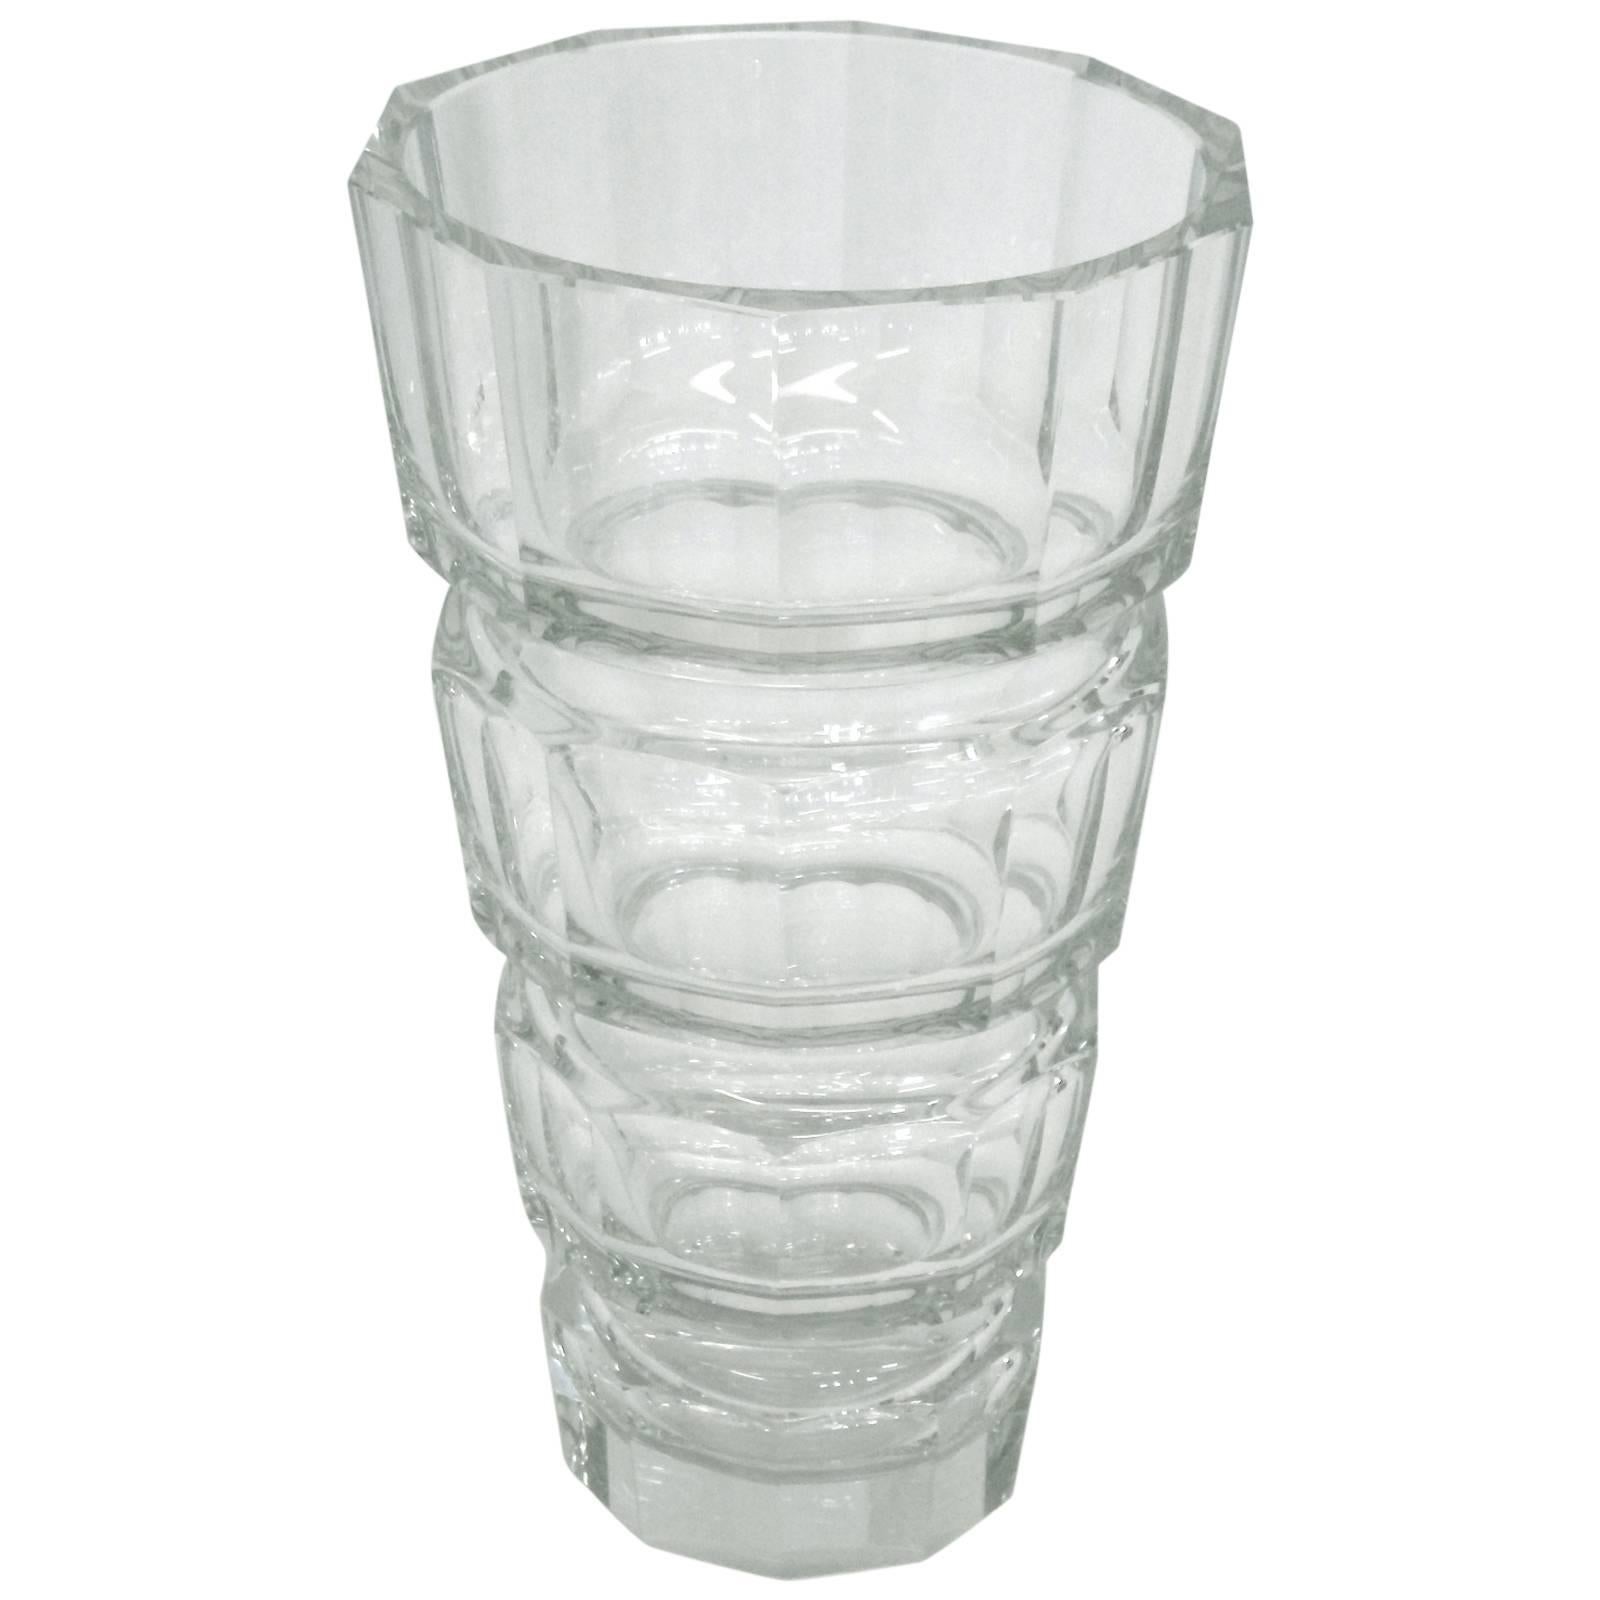 Josef Hoffmann Designed Crystal Glass Vase